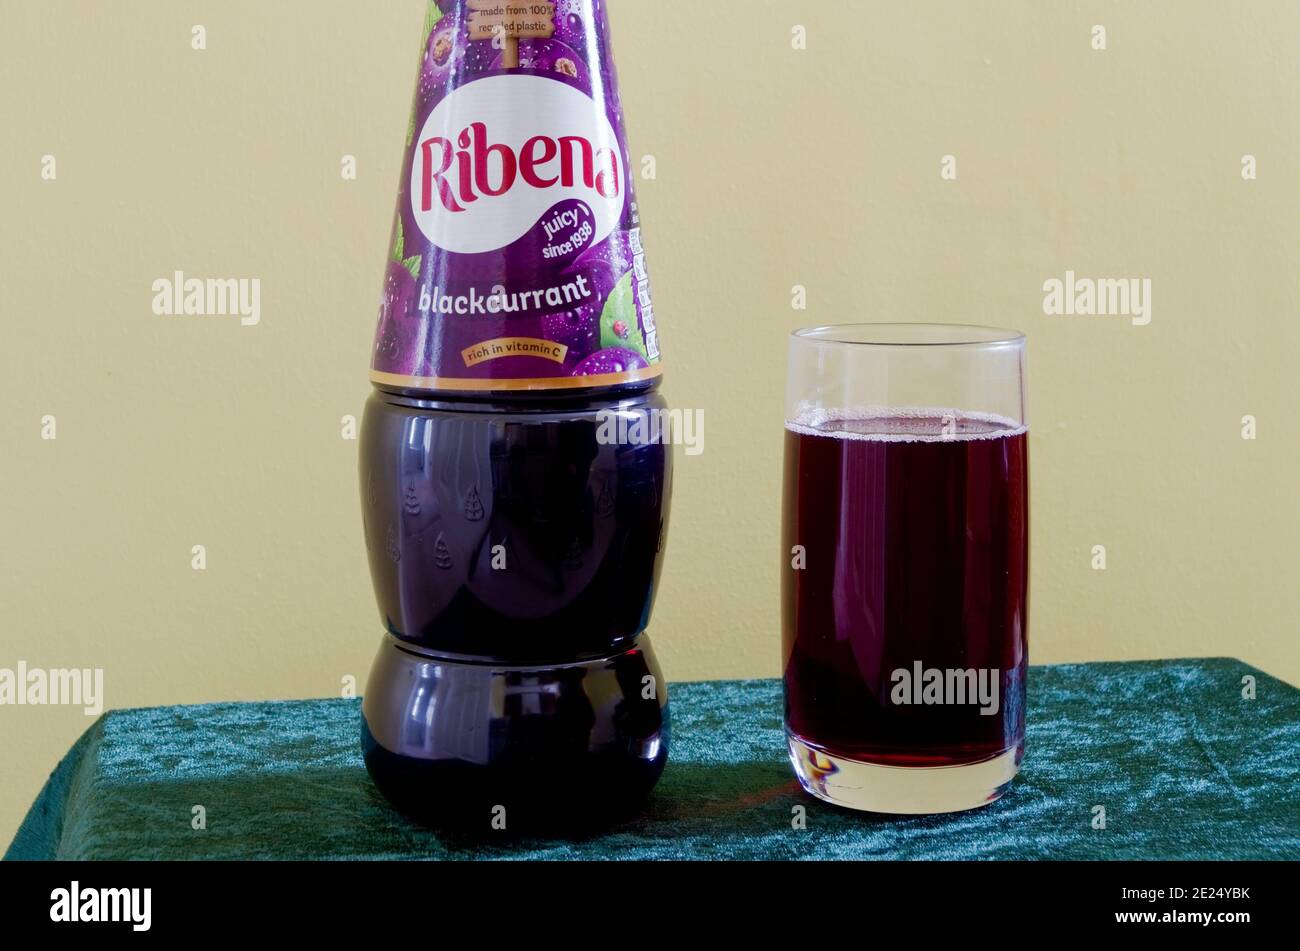 Bottiglia e bicchiere di ribena Blackcurrant Concentrated Cordial Squash drink, UK Foto Stock